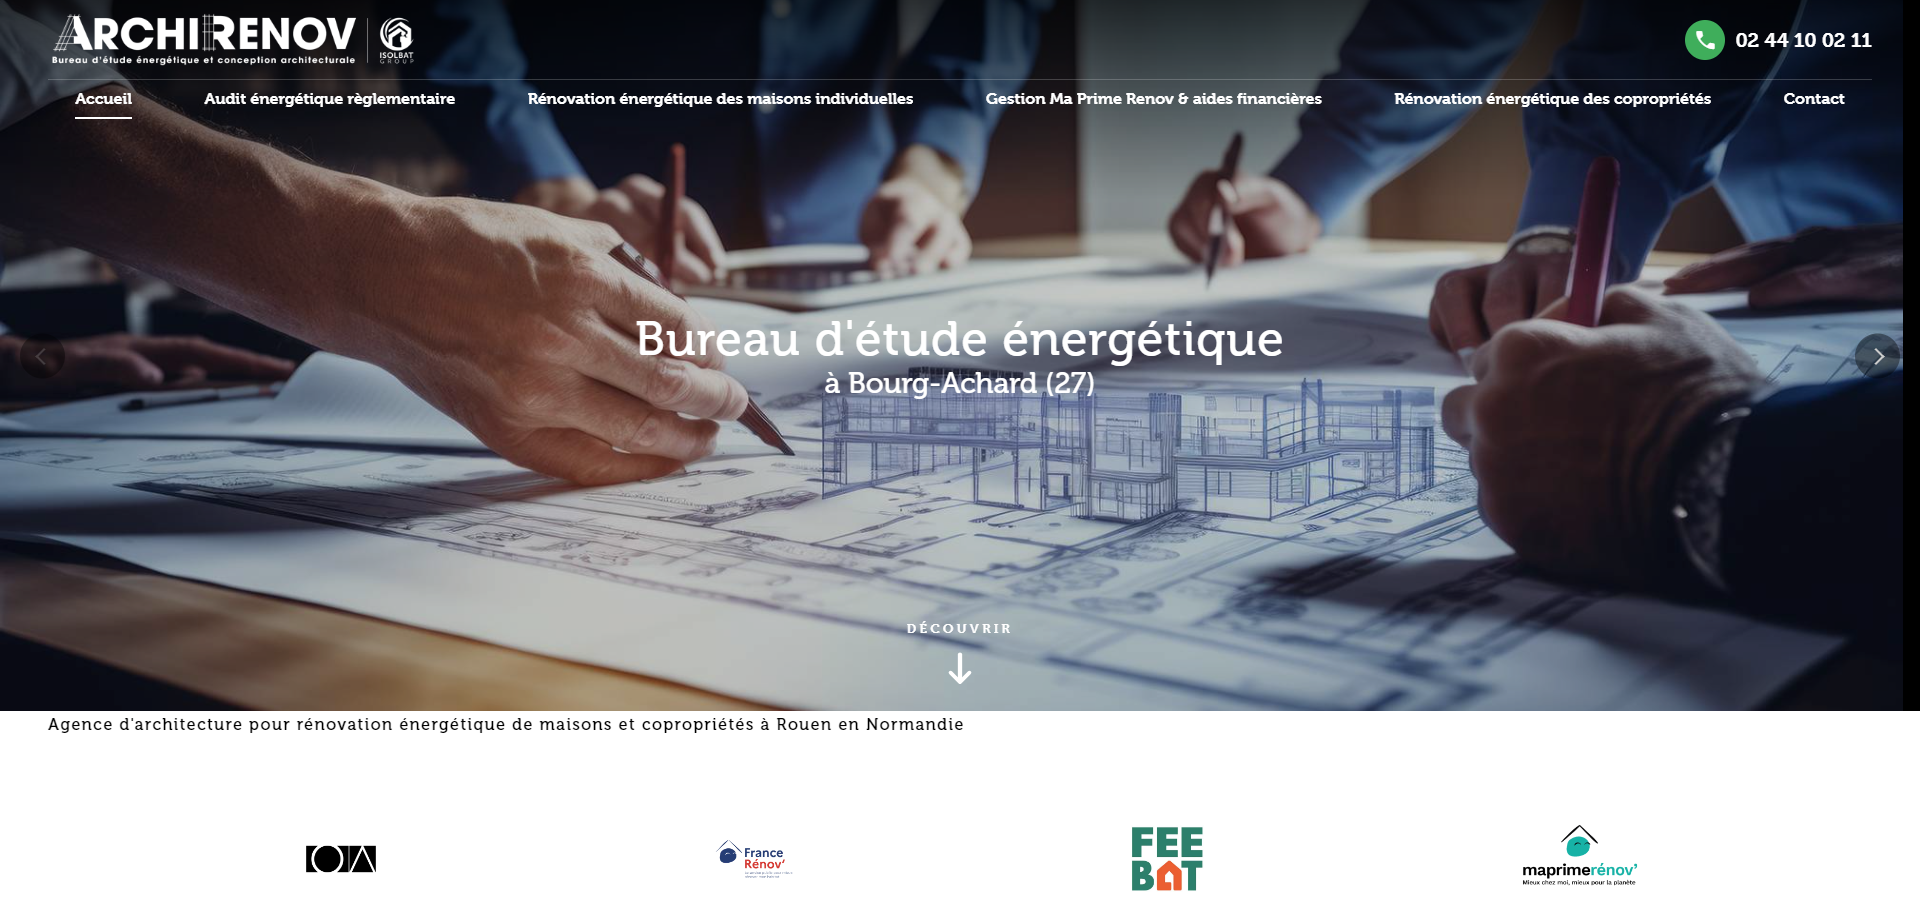 Création d'un site web pour Archirenov, architecte certifié par l'ADEME à Bourg-Achard près de Rouen